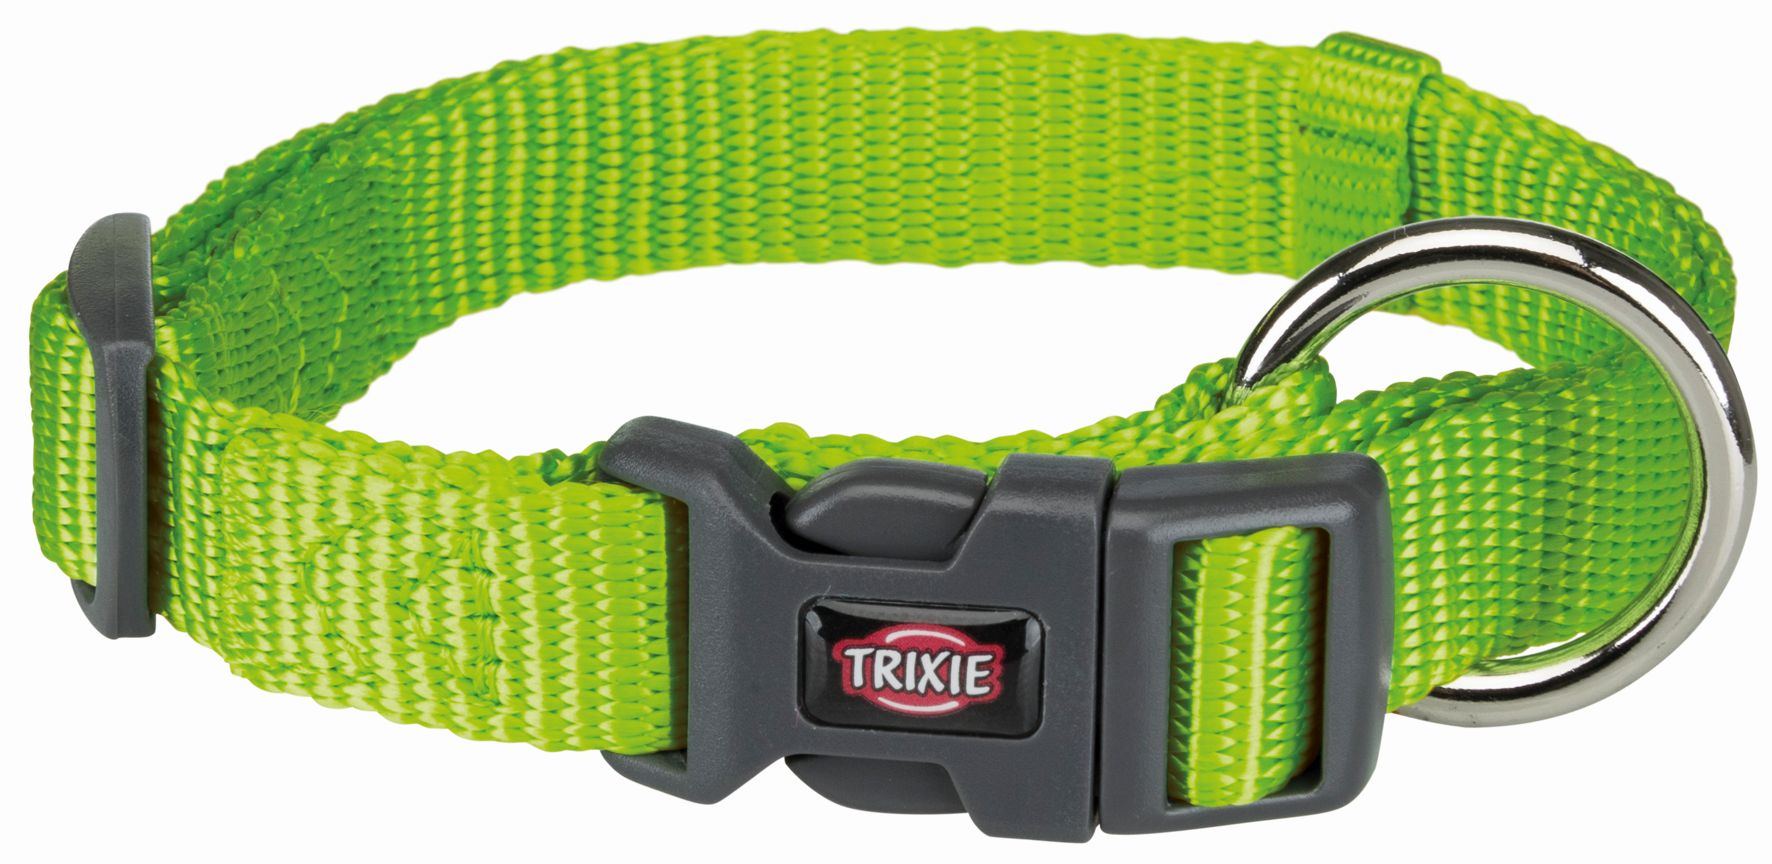 Trixie Ошейник для собак Premium, обхват шеи 30-45 см, ширина 1,5 см, яблочный